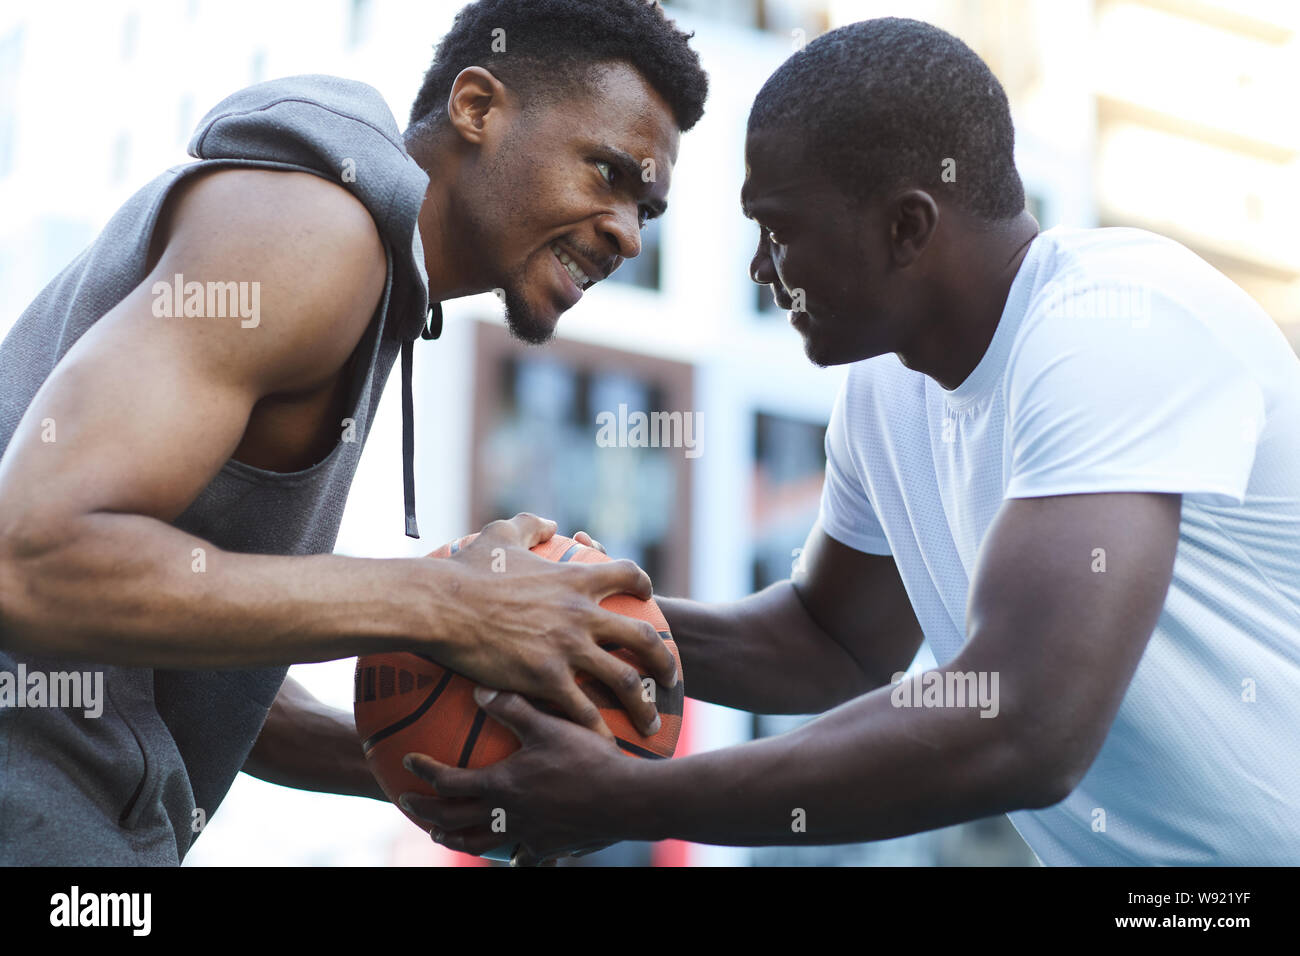 Porträt von zwei heftigen Afrikanische Männer kämpfen beim Basketball spielen Stockfoto